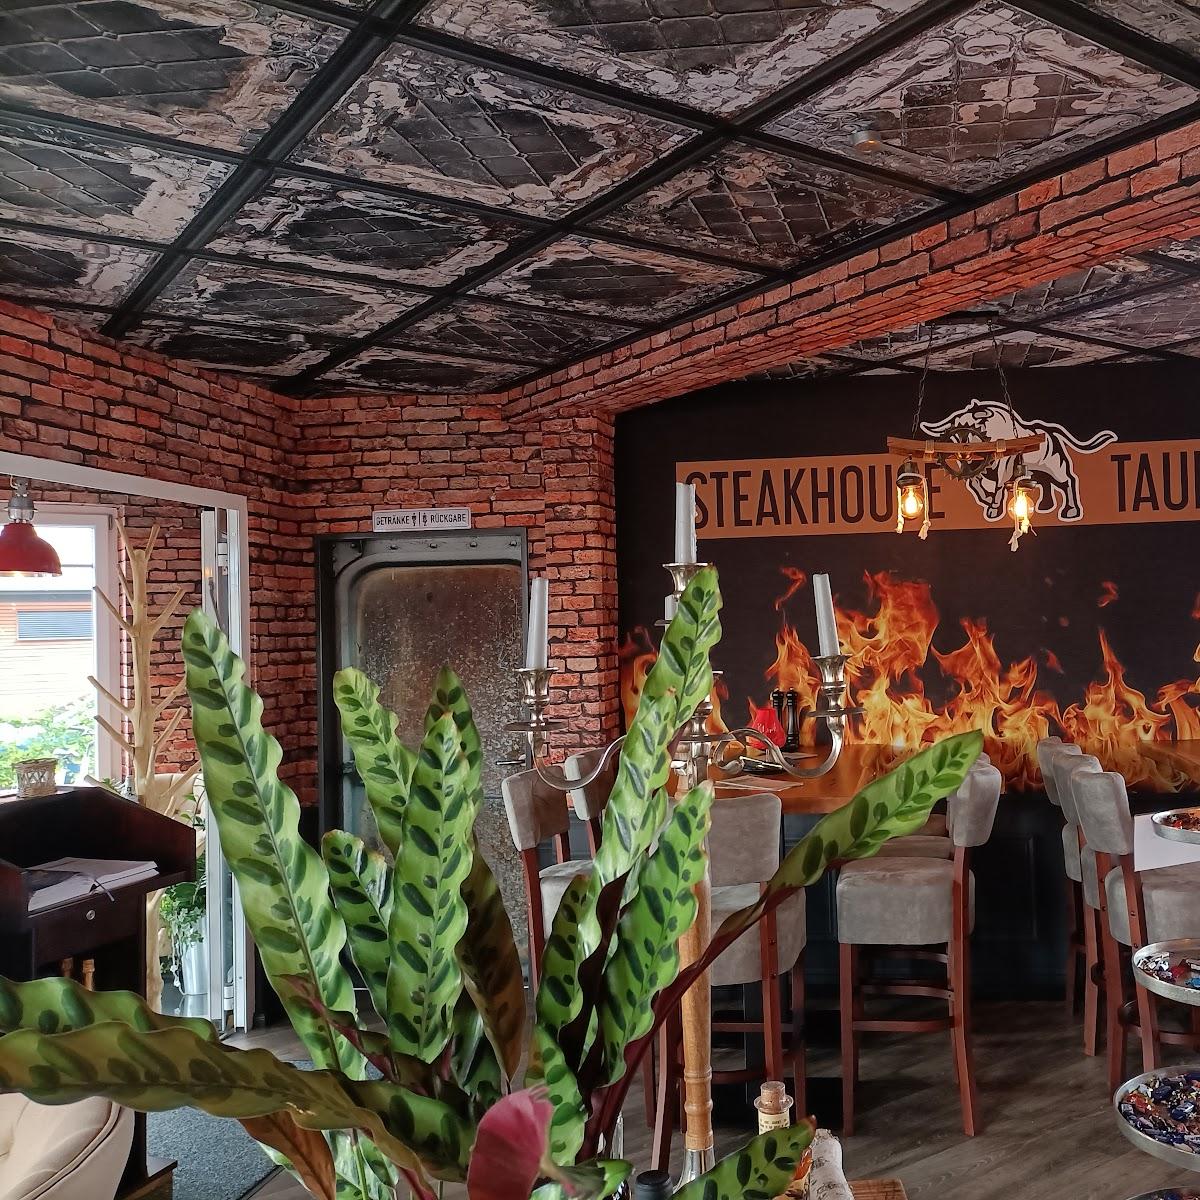 Restaurant "Steakhouse Taurus" in Heiligenhafen